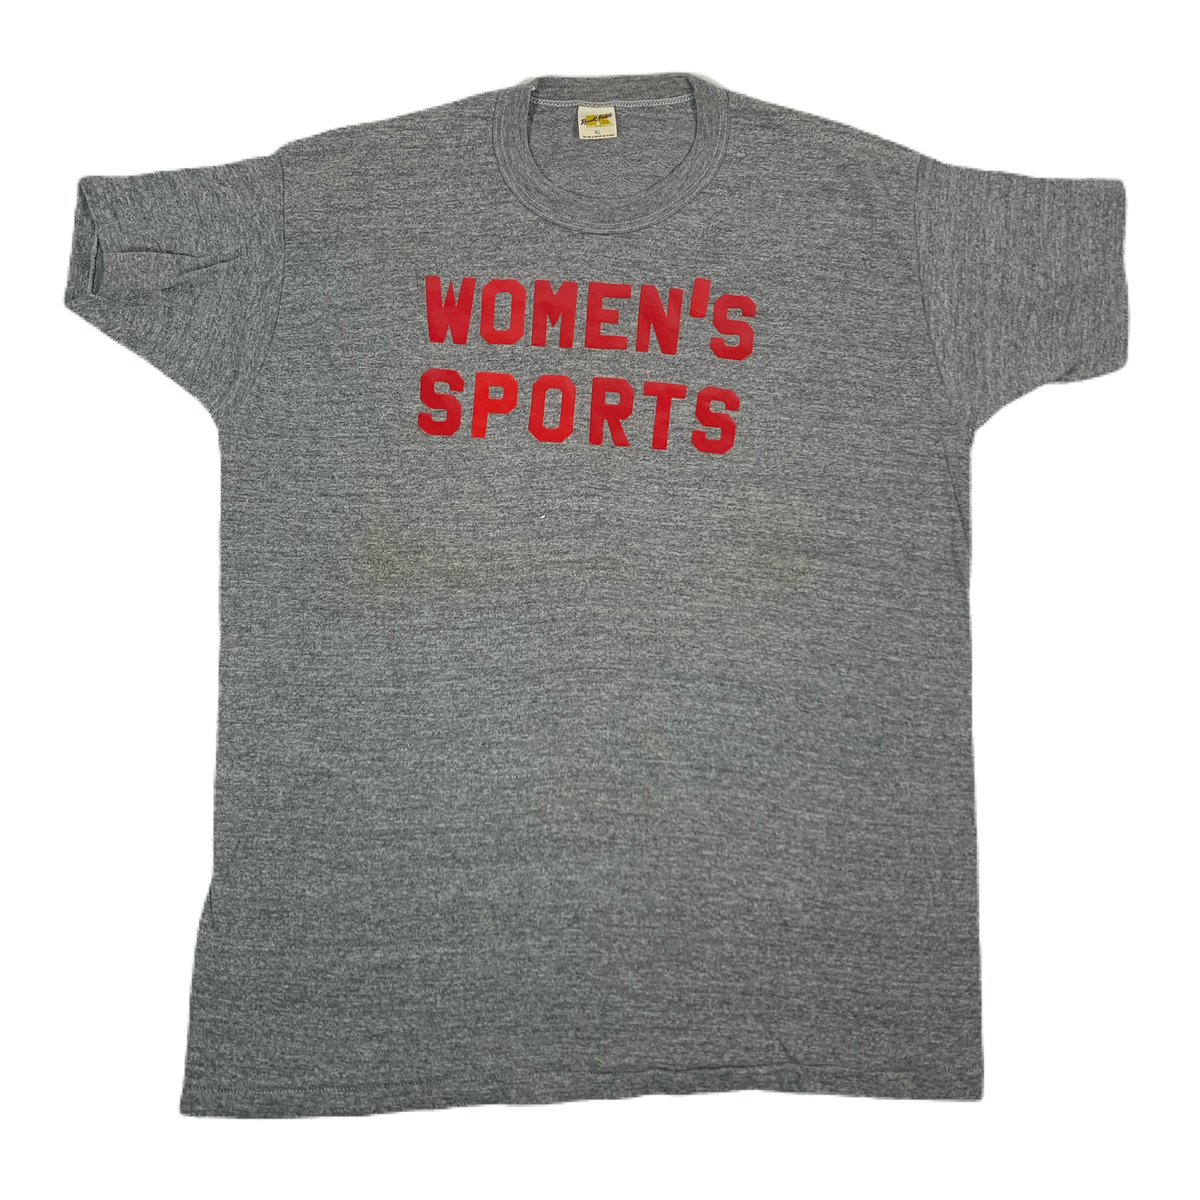 Vintage Women’s Sports “Iron-on” T-Shirt - jointcustodydc